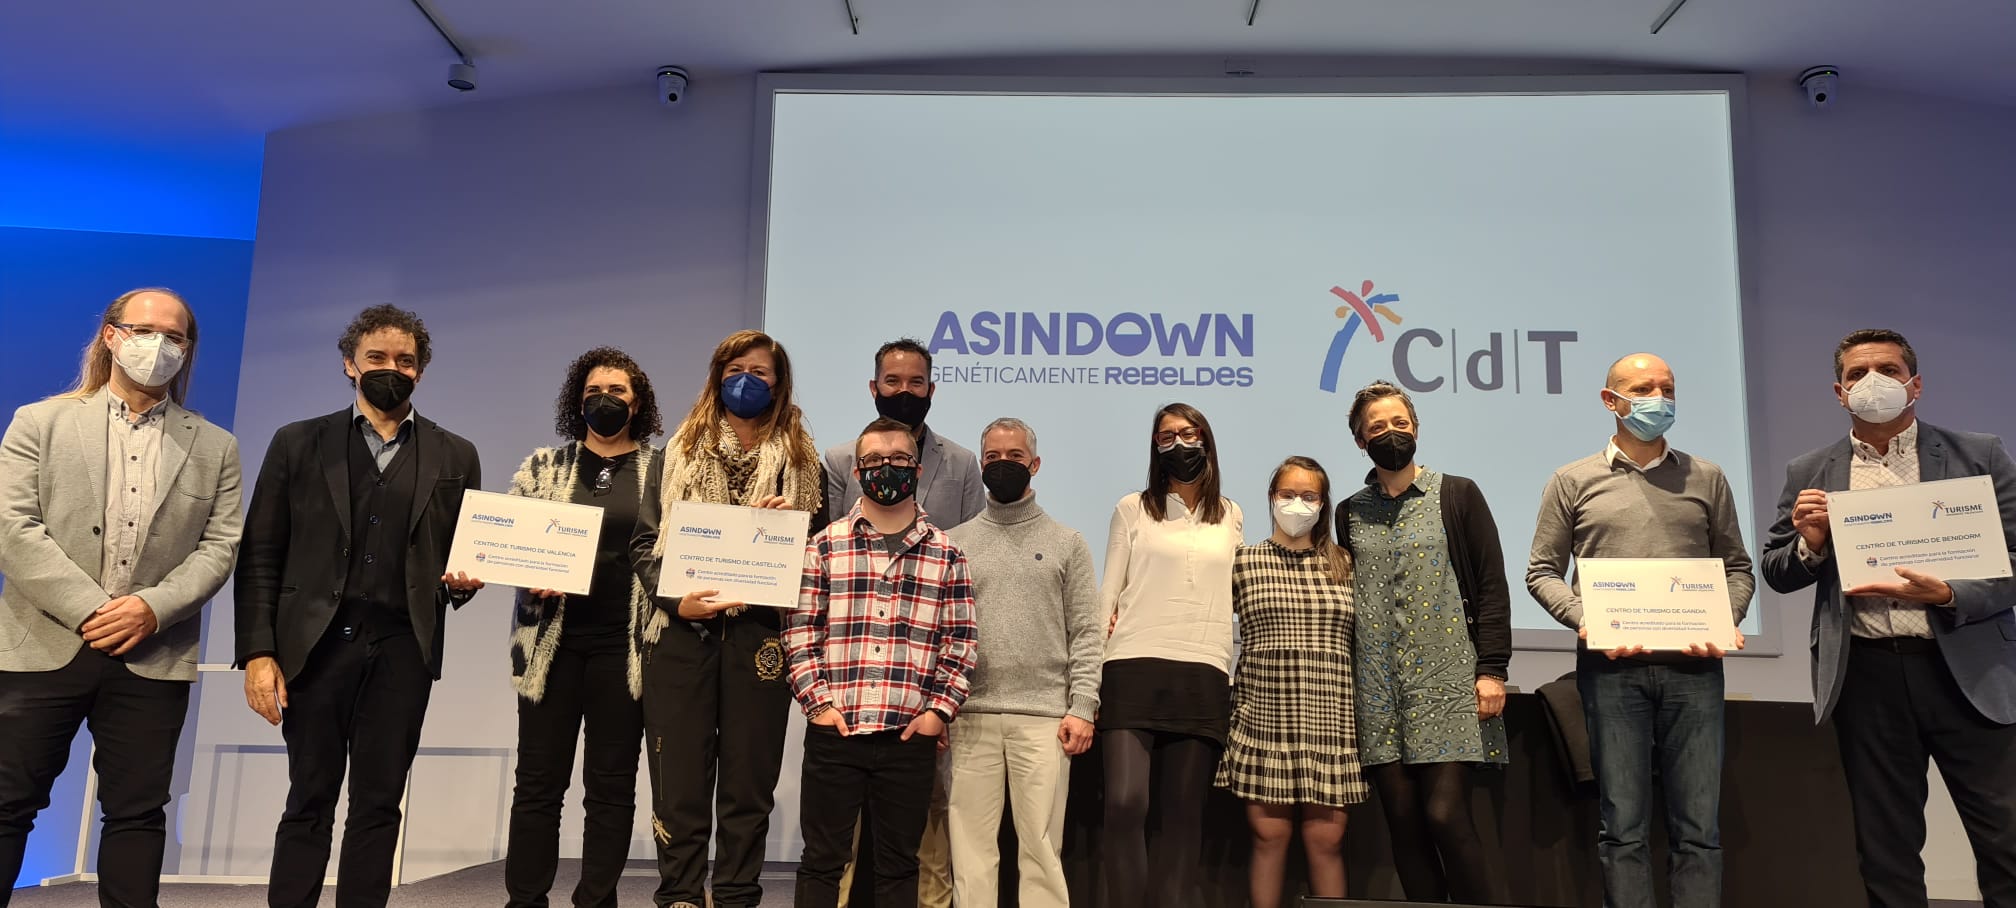 La Fundación Asindown reconoce la labor de la Red CdT de la Comunitat V...